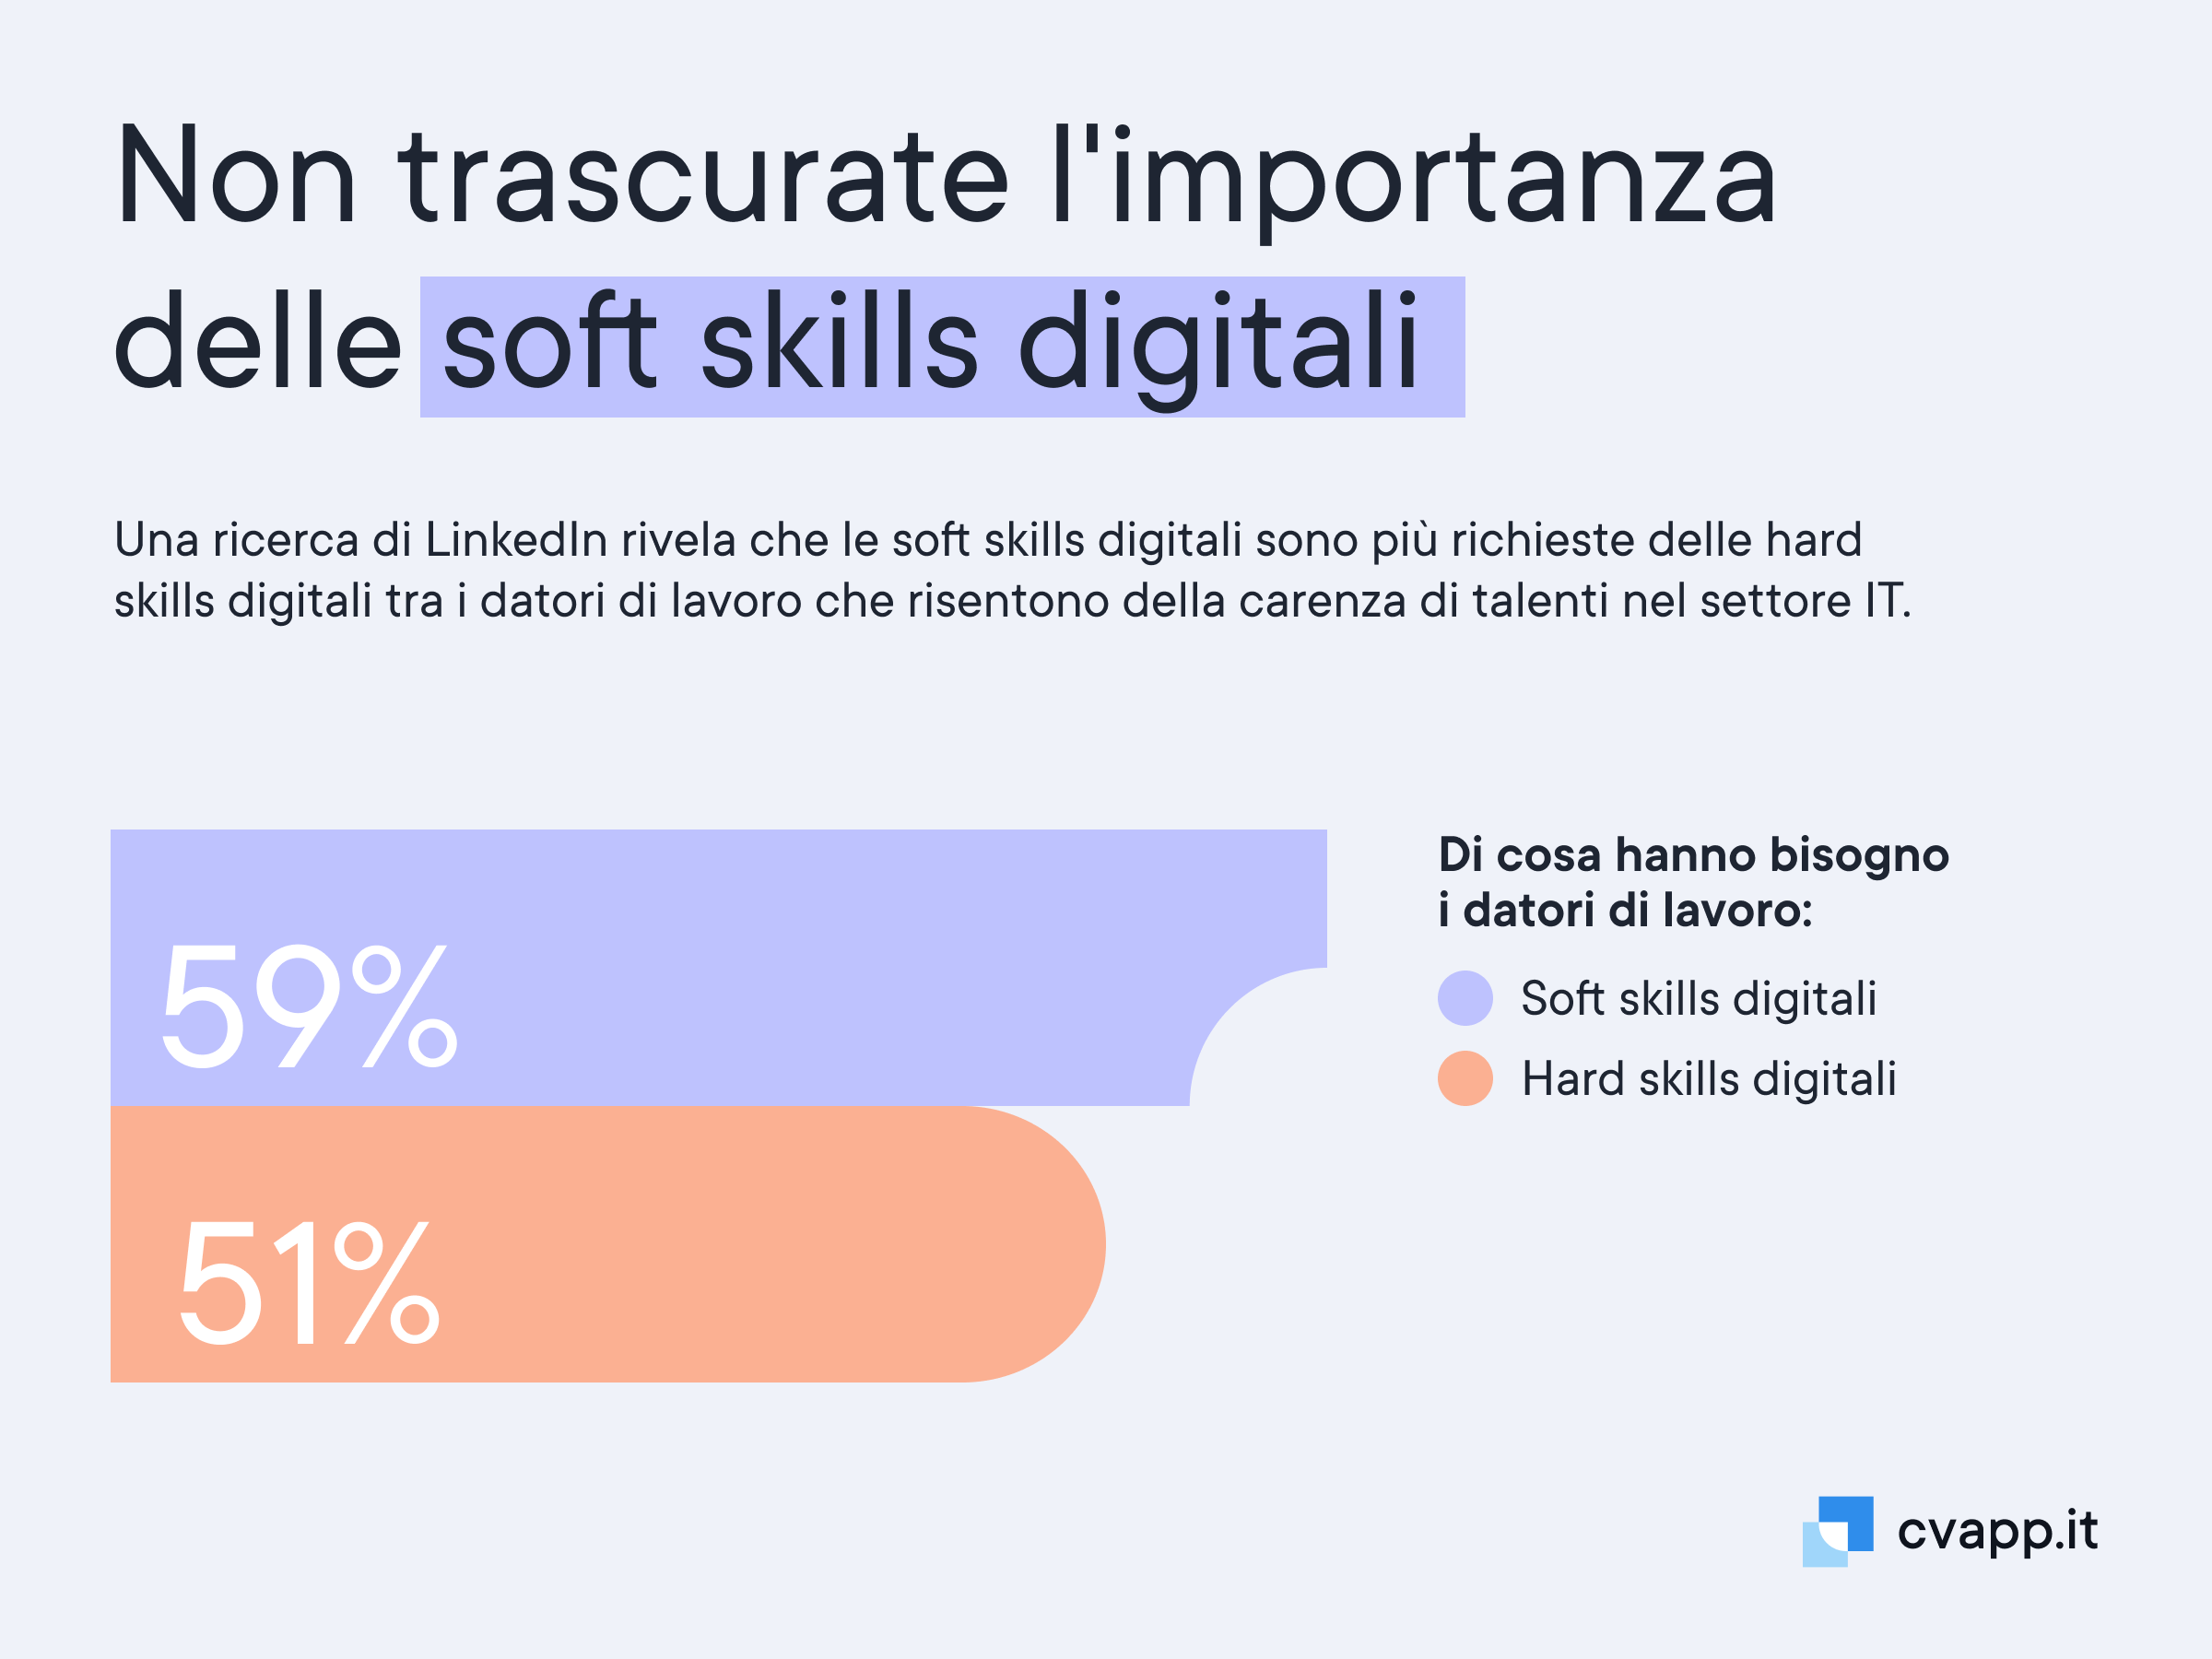 L'importanza delle soft skills digitali rispetto alle hard skills digitali